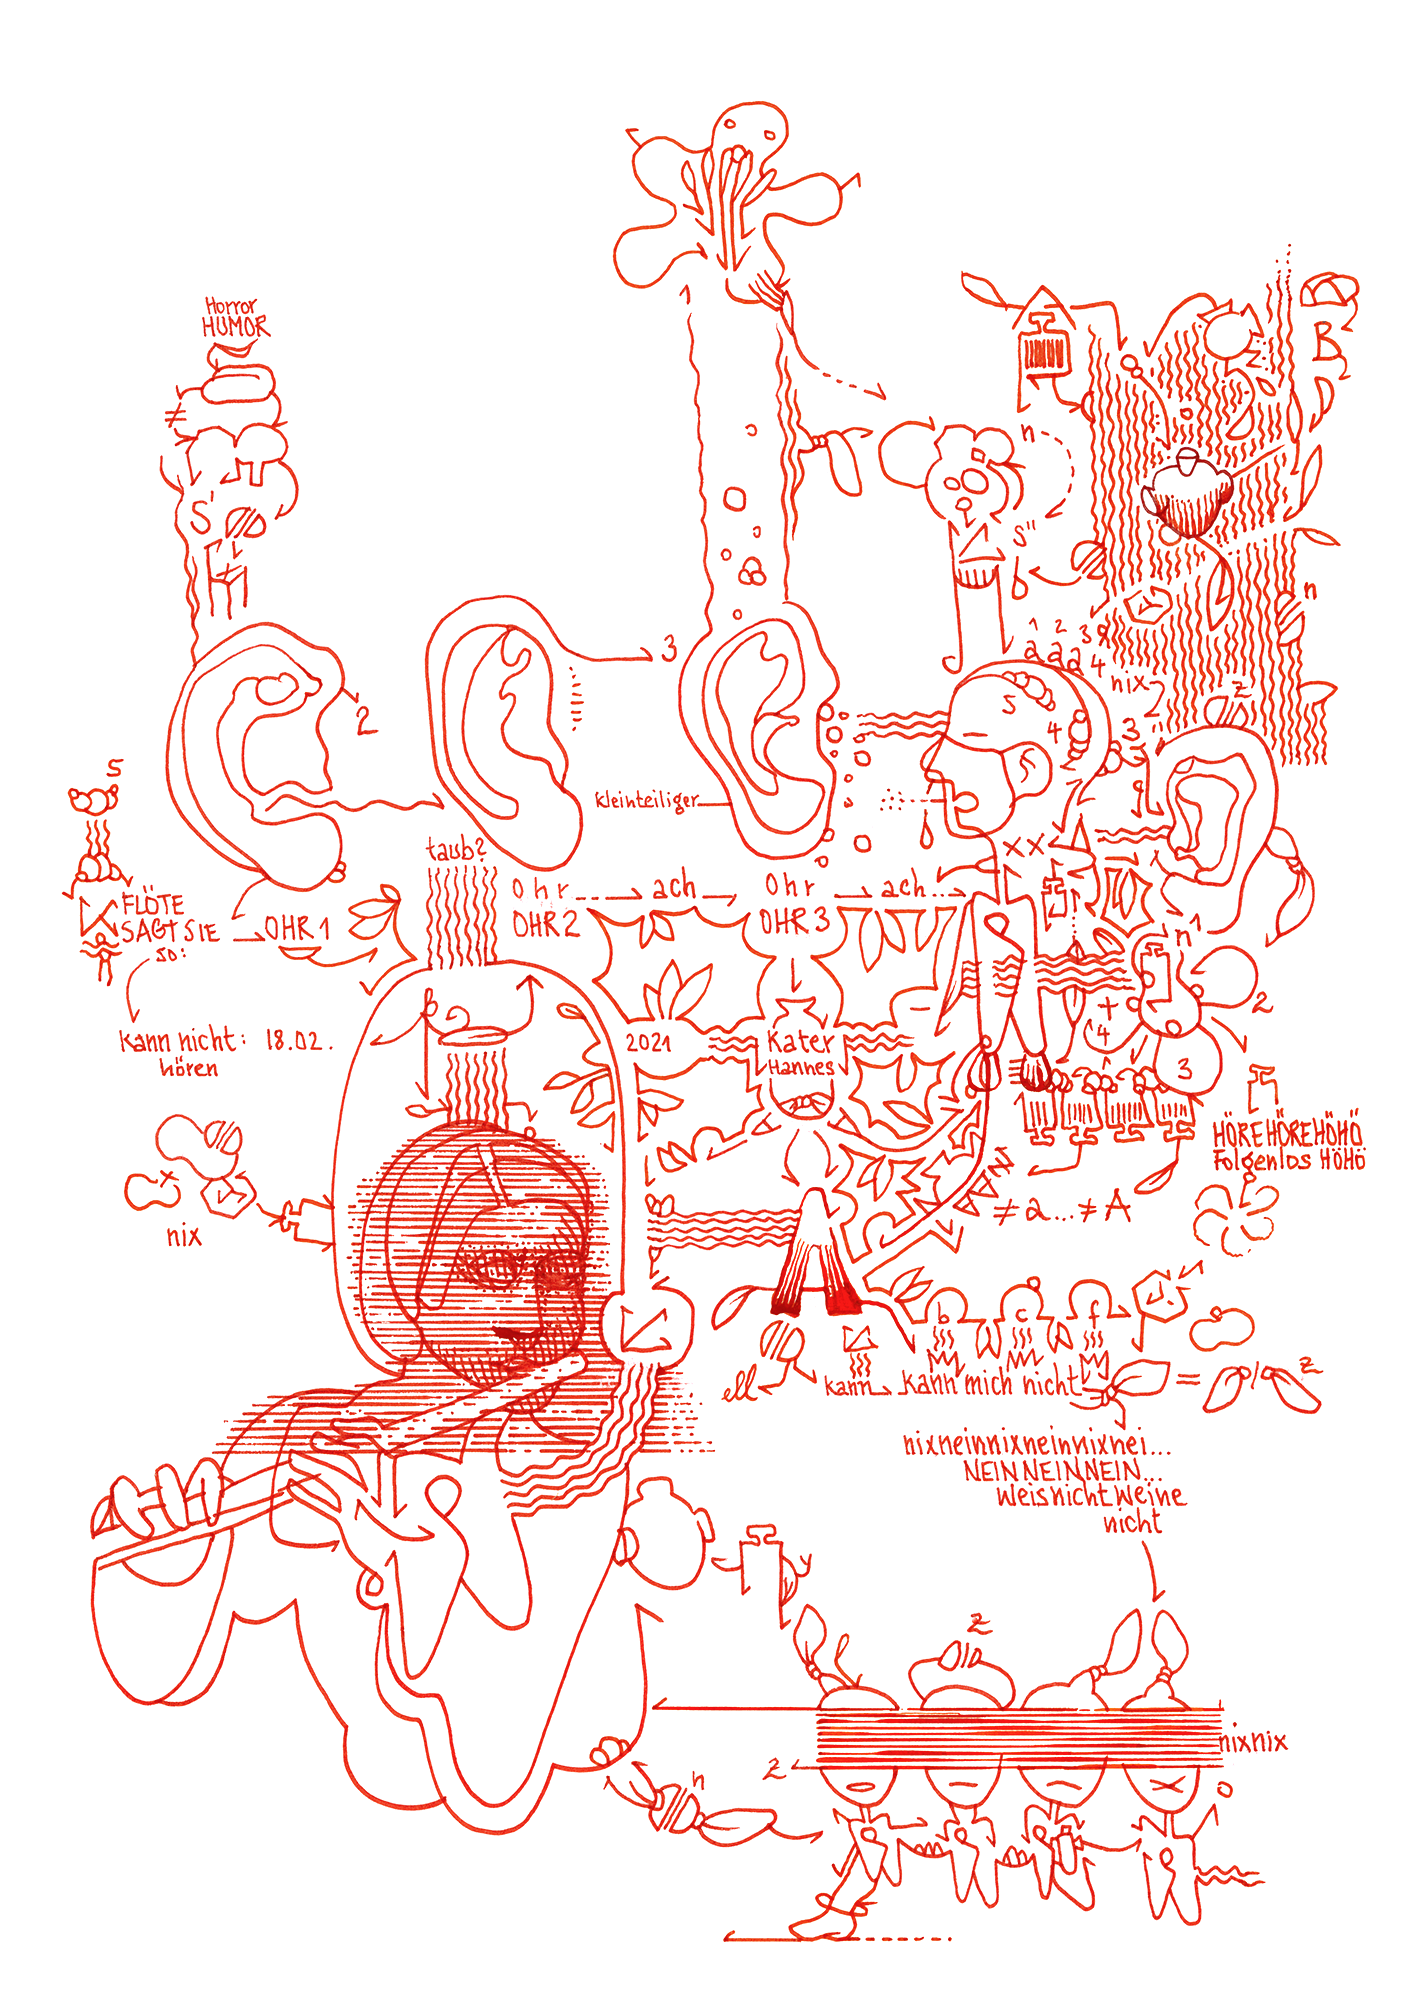 Hannes Kater: Tageszeichnung (Zeichnung/drawing) vom 18.02.2021 (1414 x 2000 Pixel)